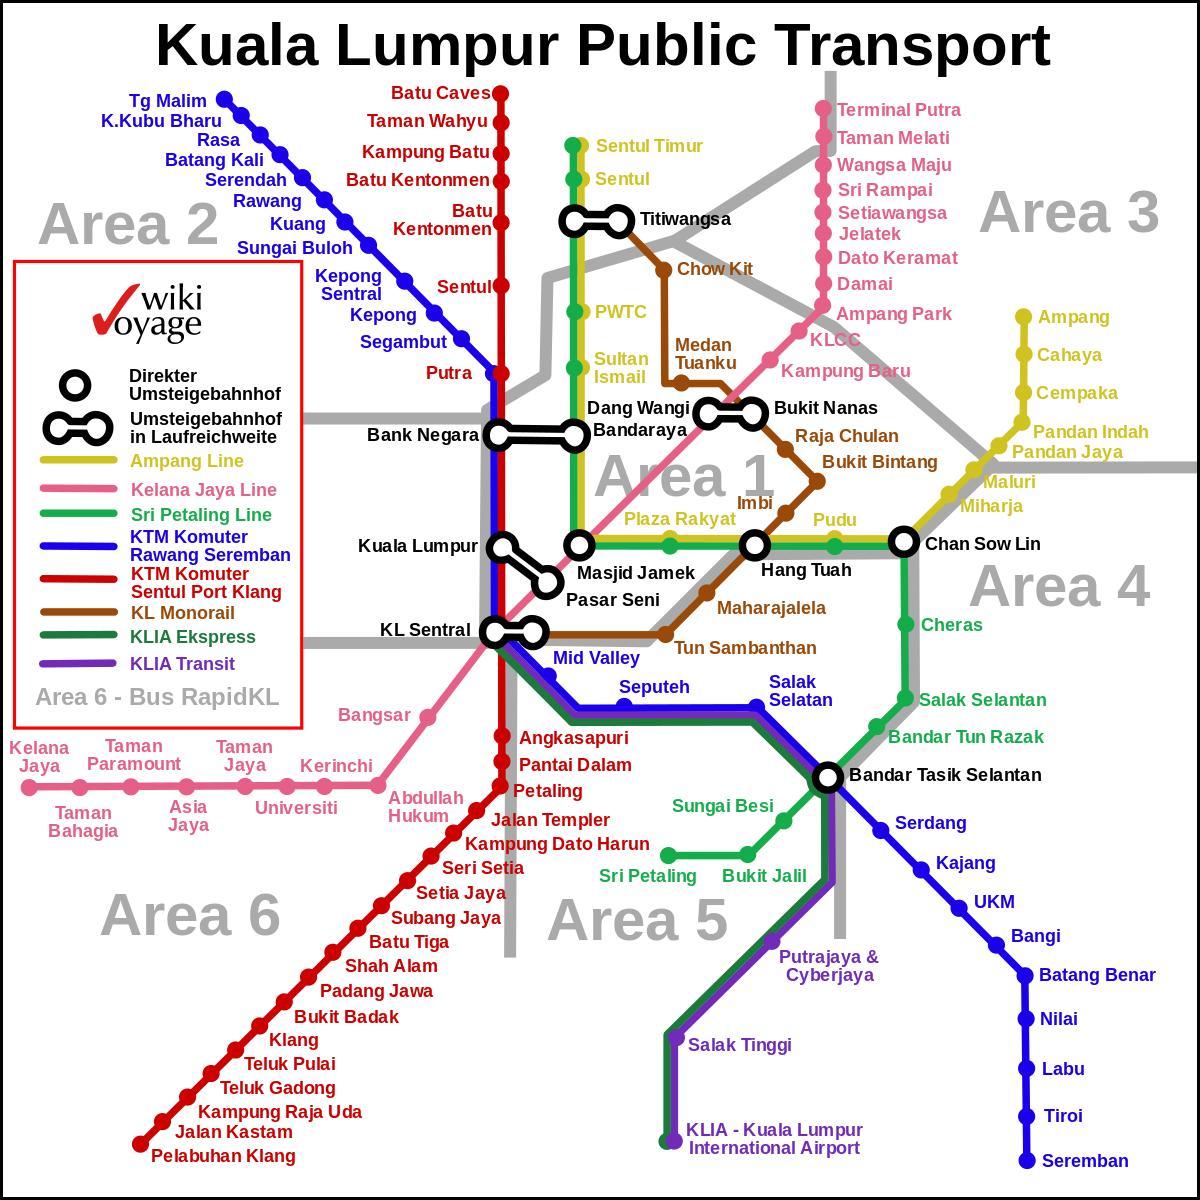 обществен транспорт Куала Лумпур картата